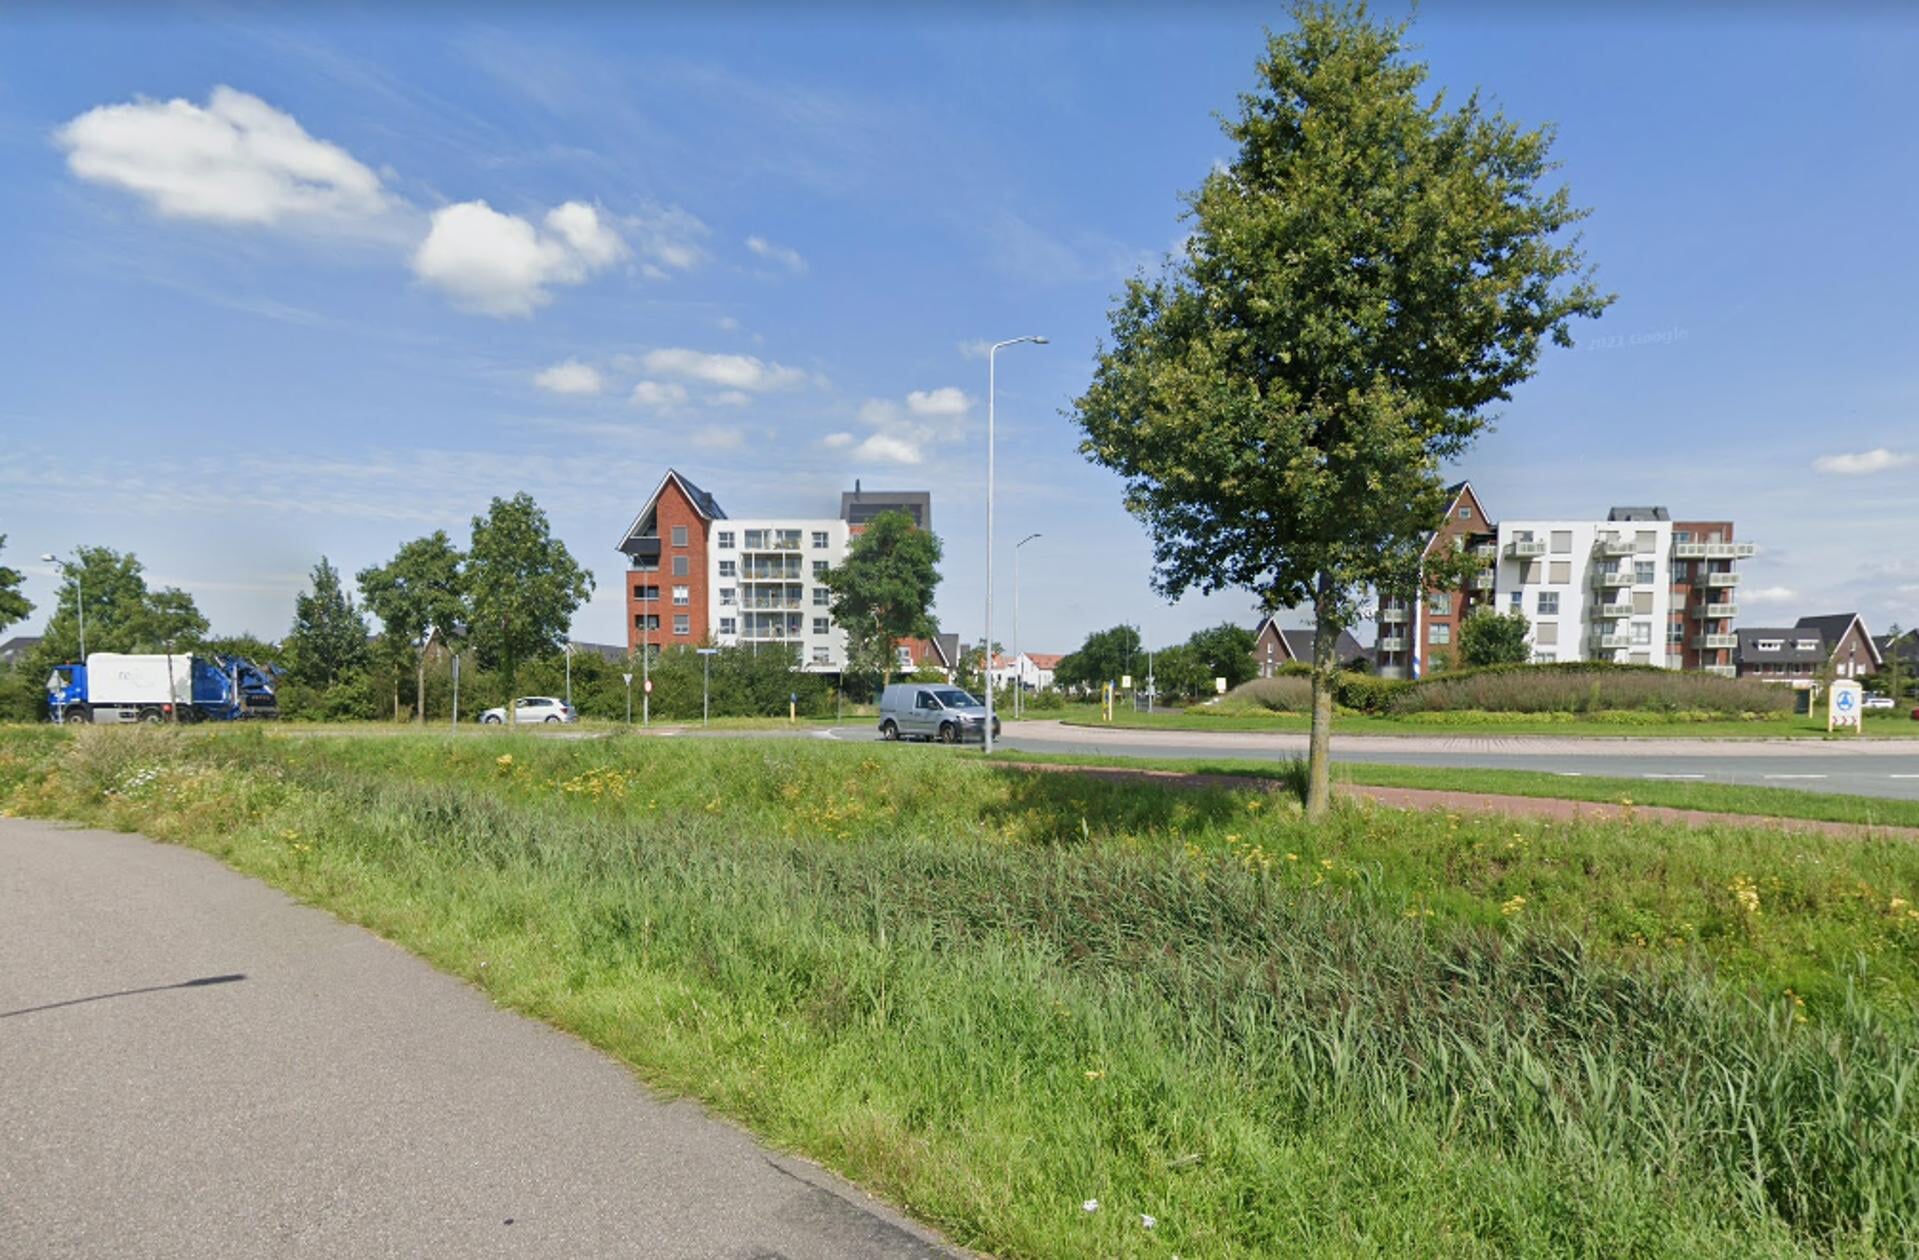 De opstellers van de petitie vinden hoogbouw langs de Arkemheenseweg een mooi alternatief voor hoogbouw van 50 meter.